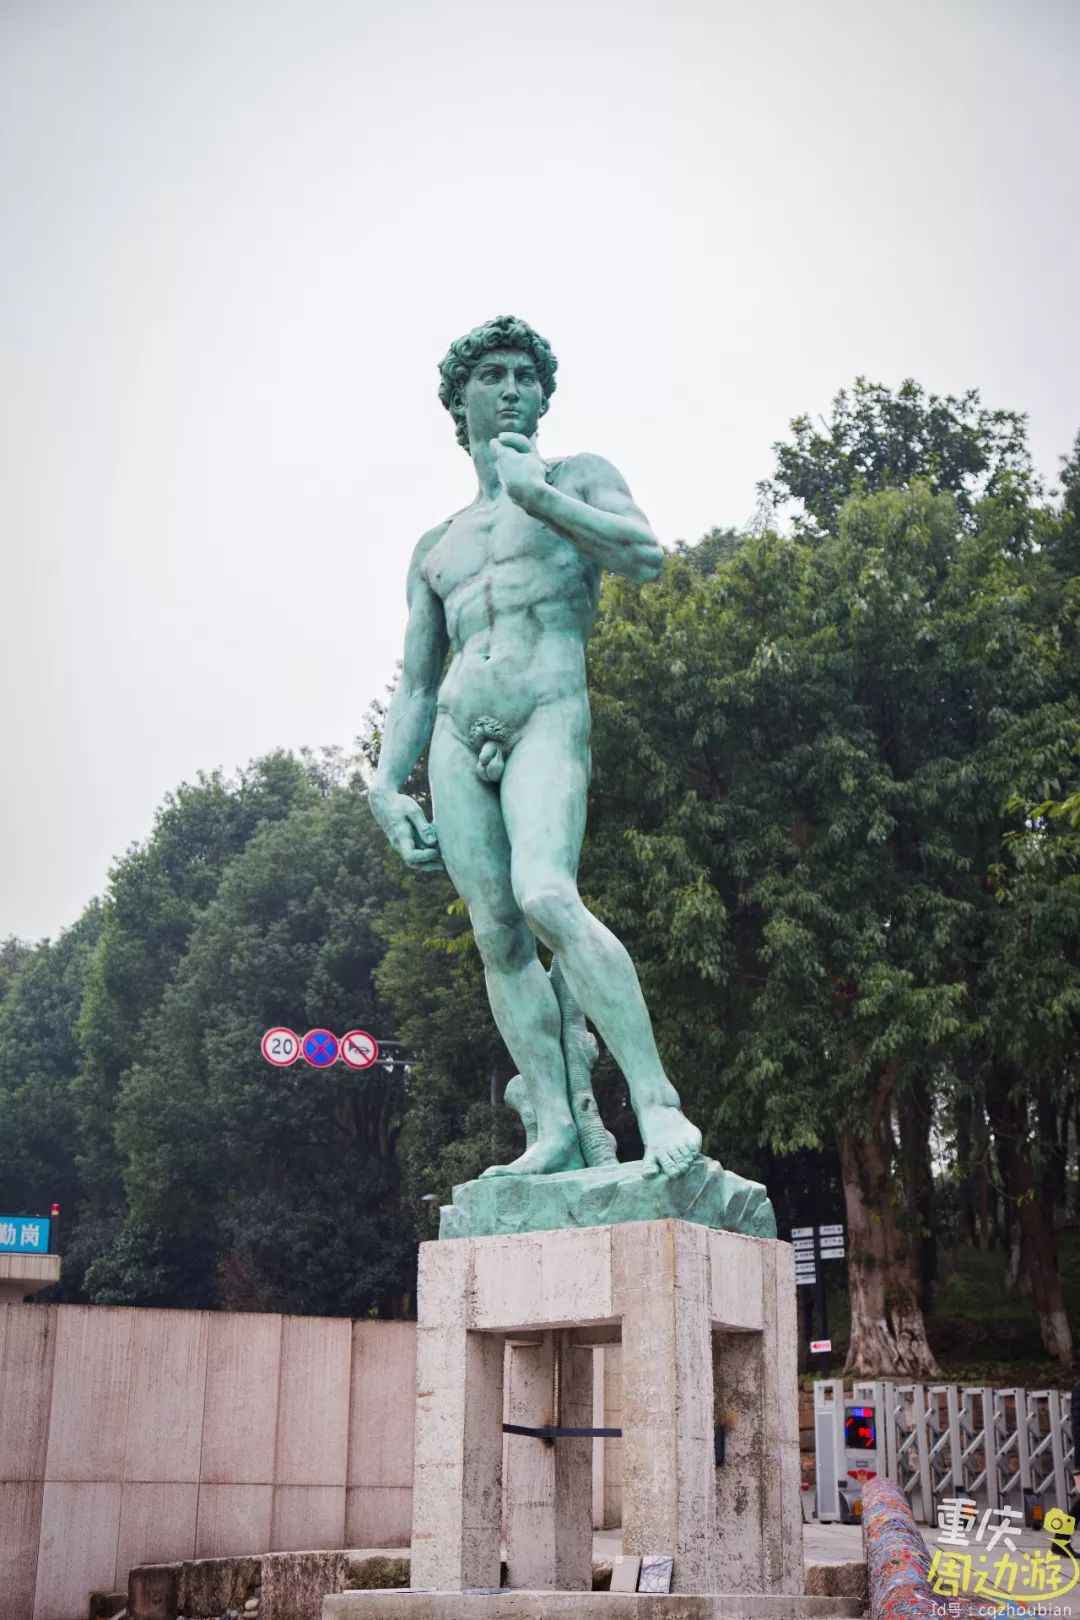 米开朗基罗广场中央的大卫很少有雕塑像大卫一样出名,这个文艺复兴